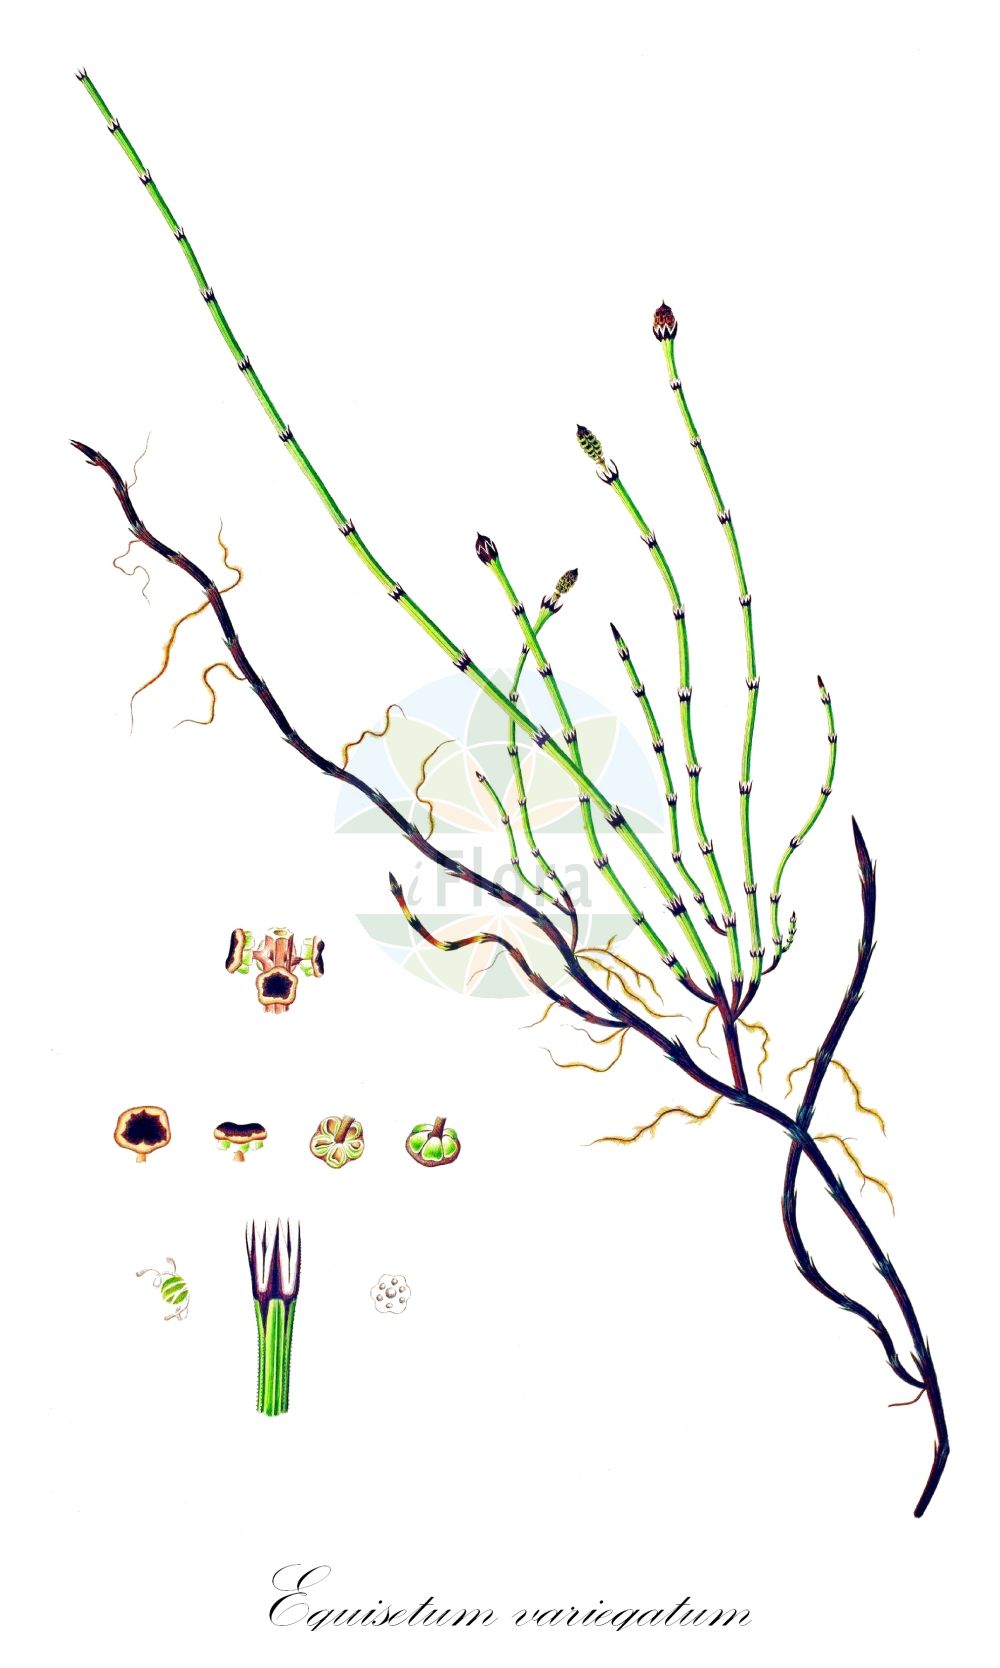 Historische Abbildung von Equisetum variegatum (Bunter Schachtelhalm - Variegated Horsetail). Das Bild zeigt Blatt, Bluete, Frucht und Same. ---- Historical Drawing of Equisetum variegatum (Bunter Schachtelhalm - Variegated Horsetail). The image is showing leaf, flower, fruit and seed.(Equisetum variegatum,Bunter Schachtelhalm,Variegated Horsetail,Equisetum variegatum,Hippochaete variegata,Bunter Schachtelhalm,Suedlicher Schachtelhalm,Variegated Horsetail,Variegated Scouringrush,Equisetum,Schachtelhalm,Horsetail,Equisetaceae,Schachtelhalmgewächse,Horsetail family,Blatt,Bluete,Frucht,Same,leaf,flower,fruit,seed,Oeder (1761-1883))